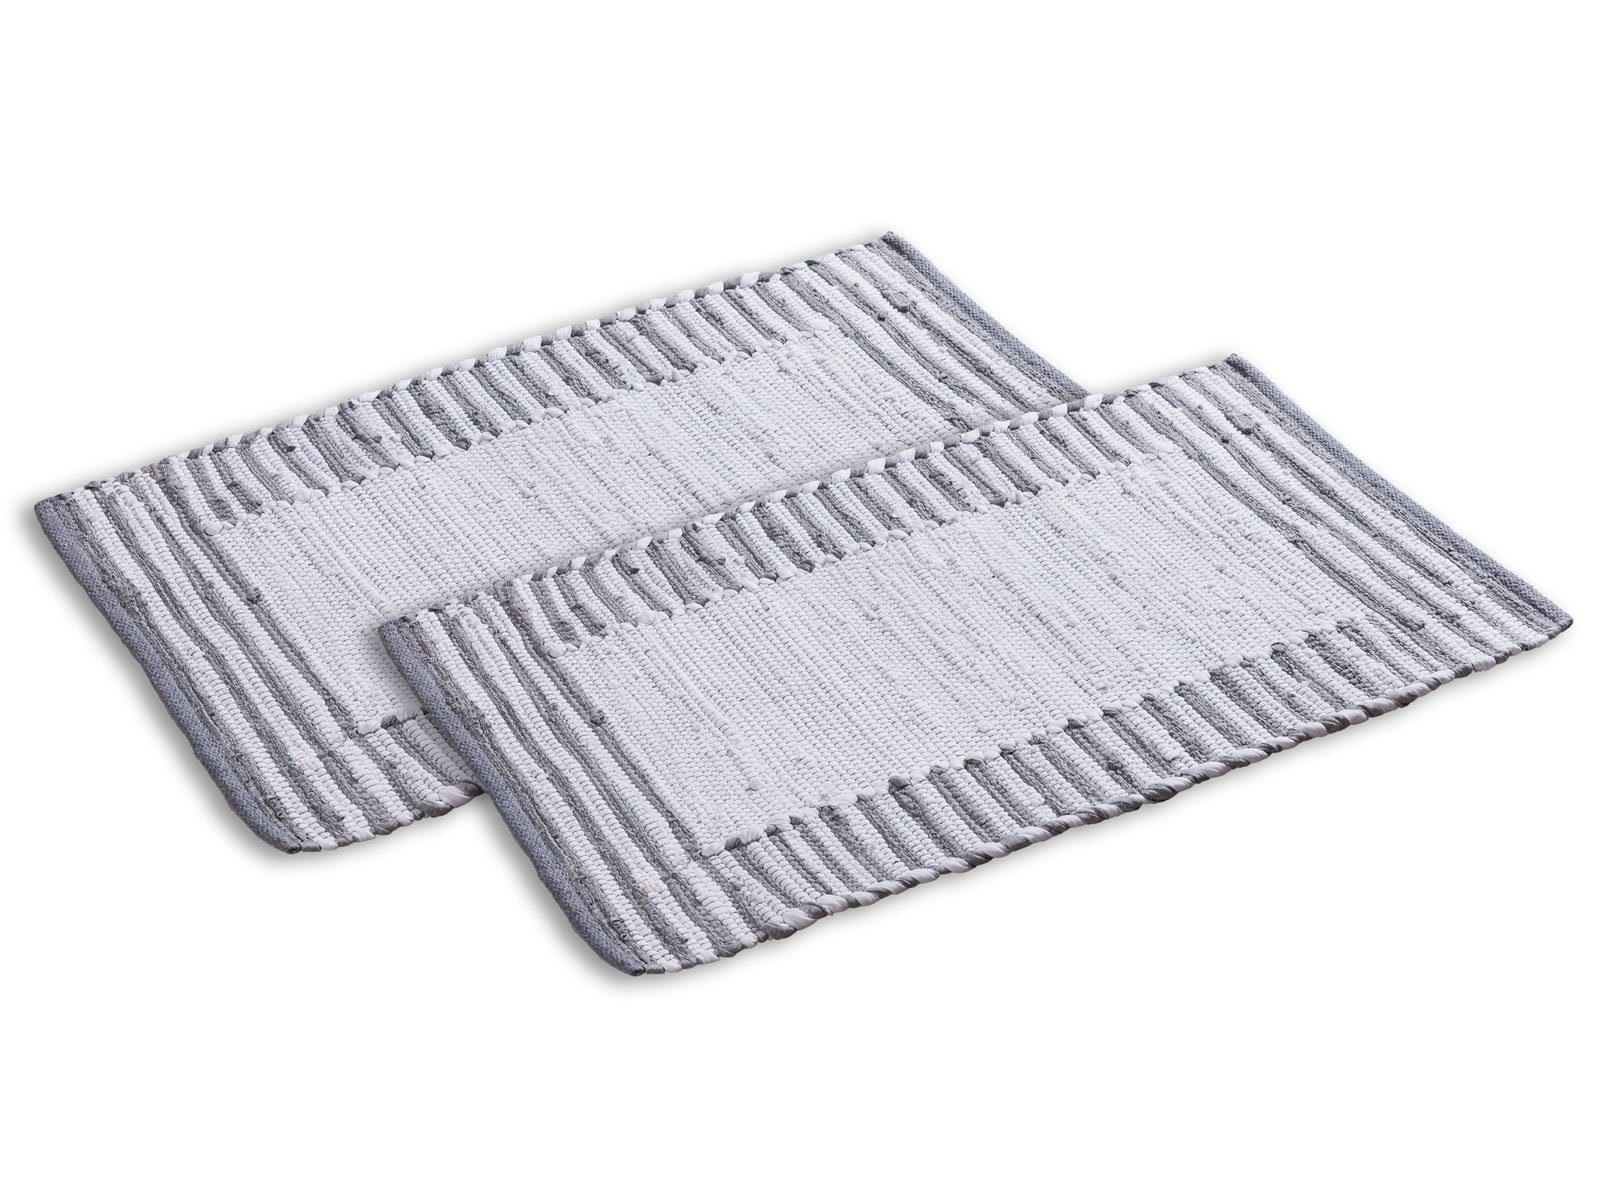 Teppich Badezimmerteppich Set 2er groß 80x50 Baumwolle Badvorleger vers Farben, Minara weiß-grau